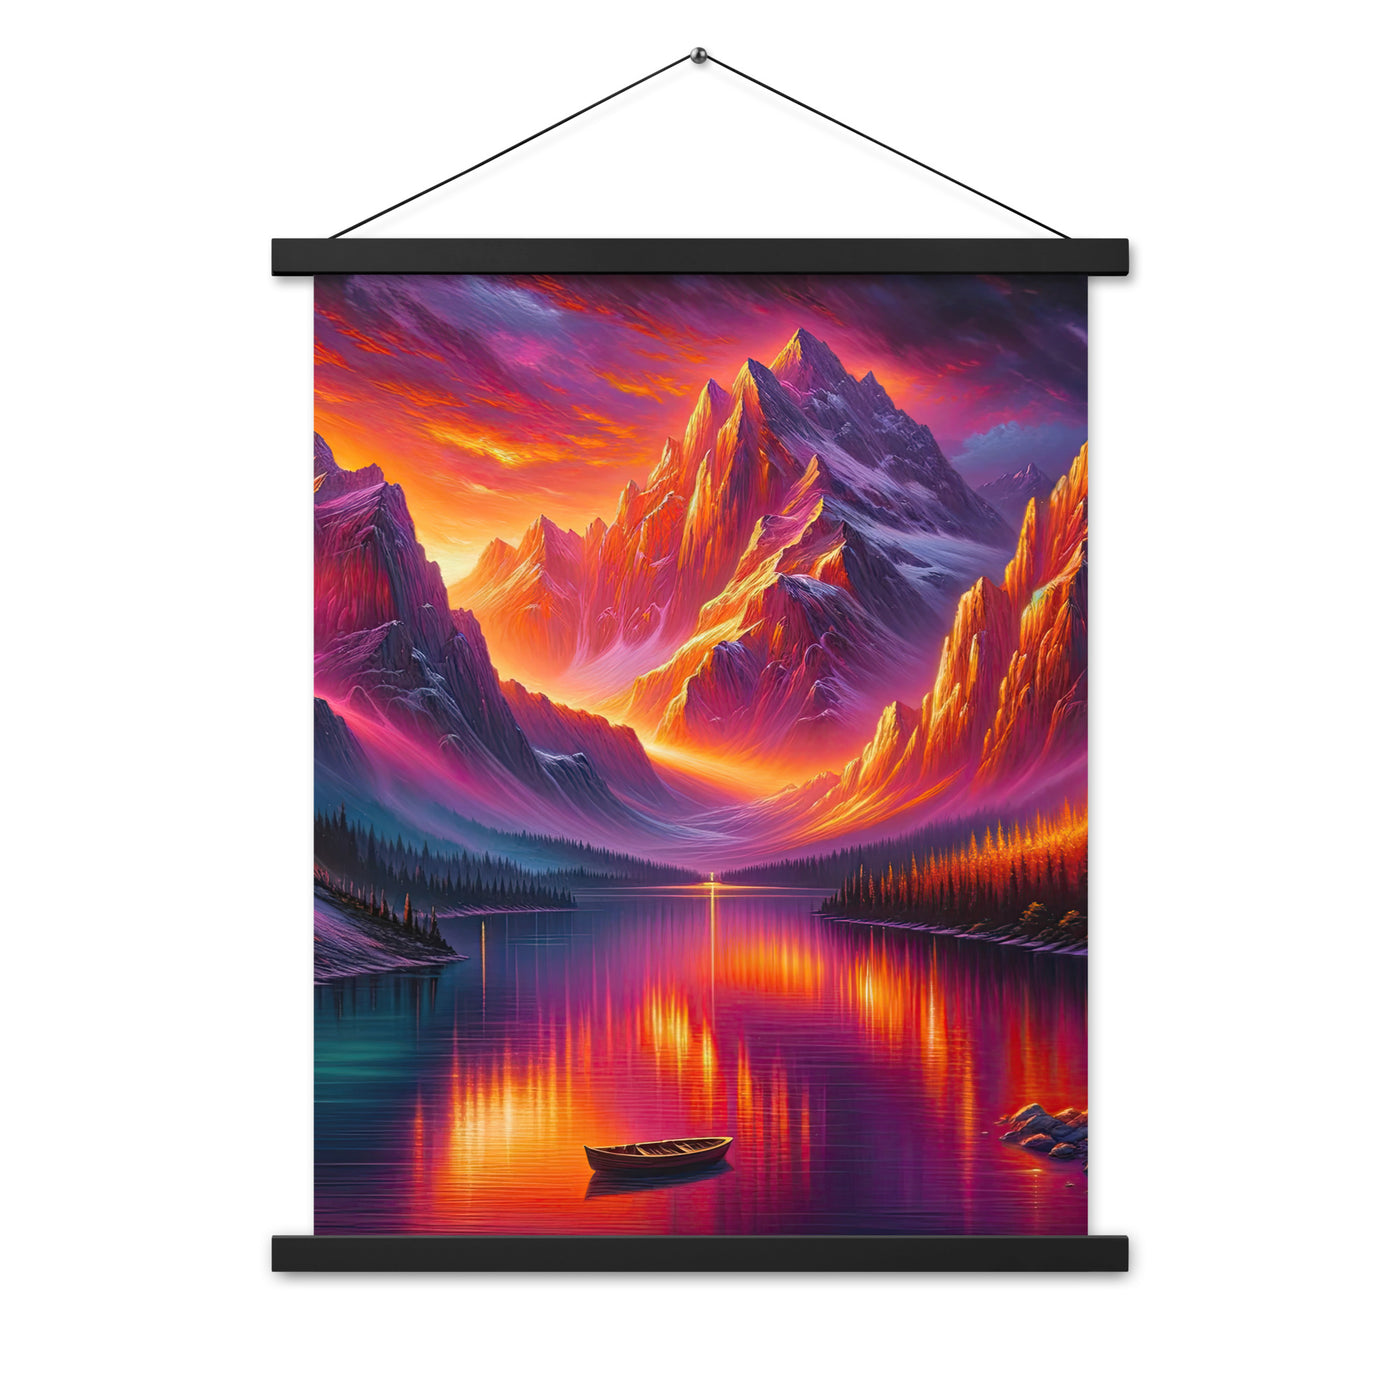 Ölgemälde eines Bootes auf einem Bergsee bei Sonnenuntergang, lebendige Orange-Lila Töne - Premium Poster mit Aufhängung berge xxx yyy zzz 45.7 x 61 cm